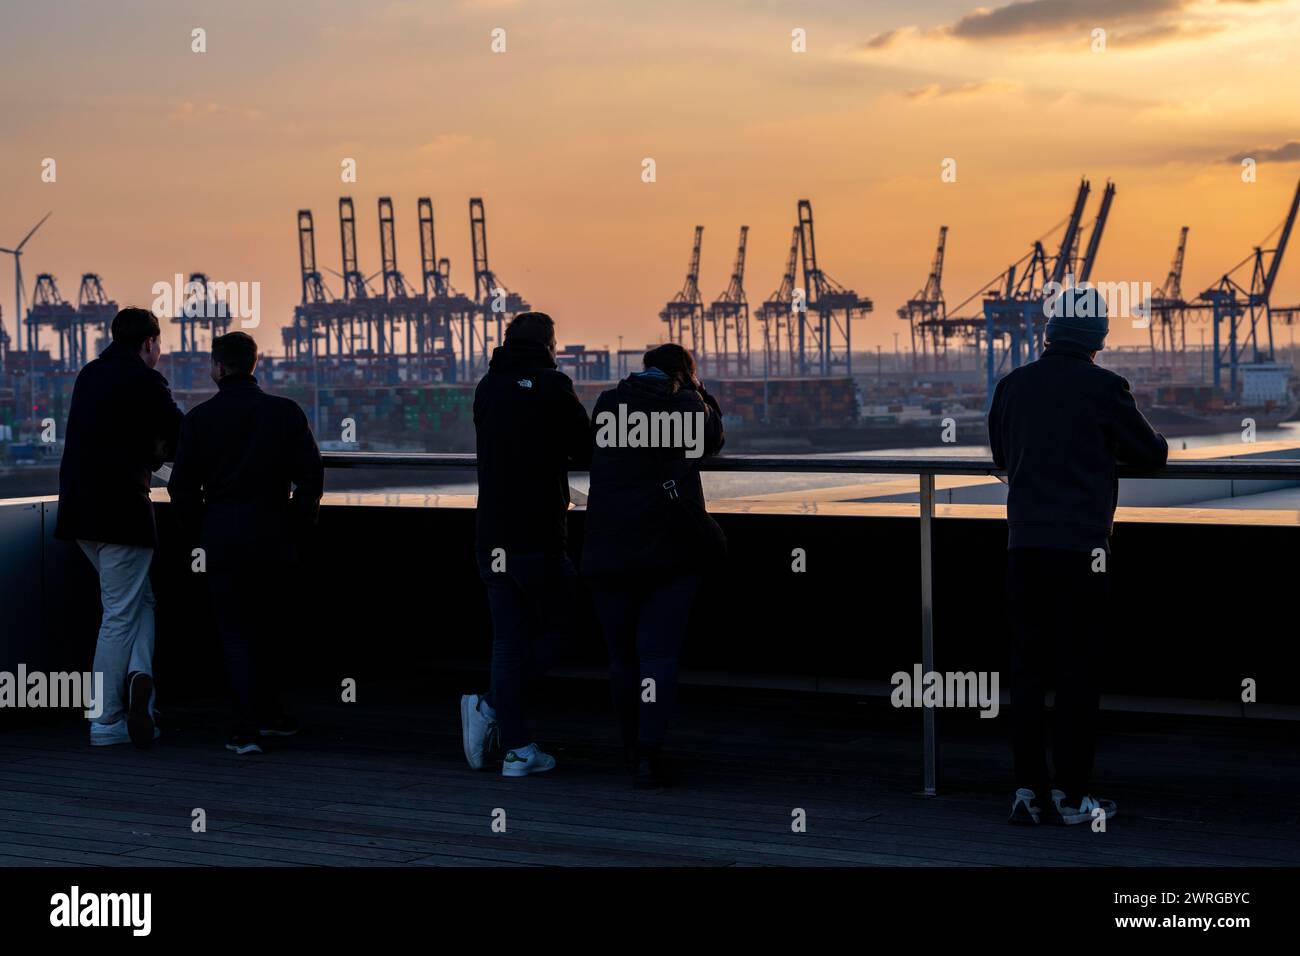 Bâtiment Hambourg Dockland, plate-forme d'observation, vue sur l'Elbe et le terminal à conteneurs Burchardkai, coucher de soleil, Hambourg, Allemagne Banque D'Images